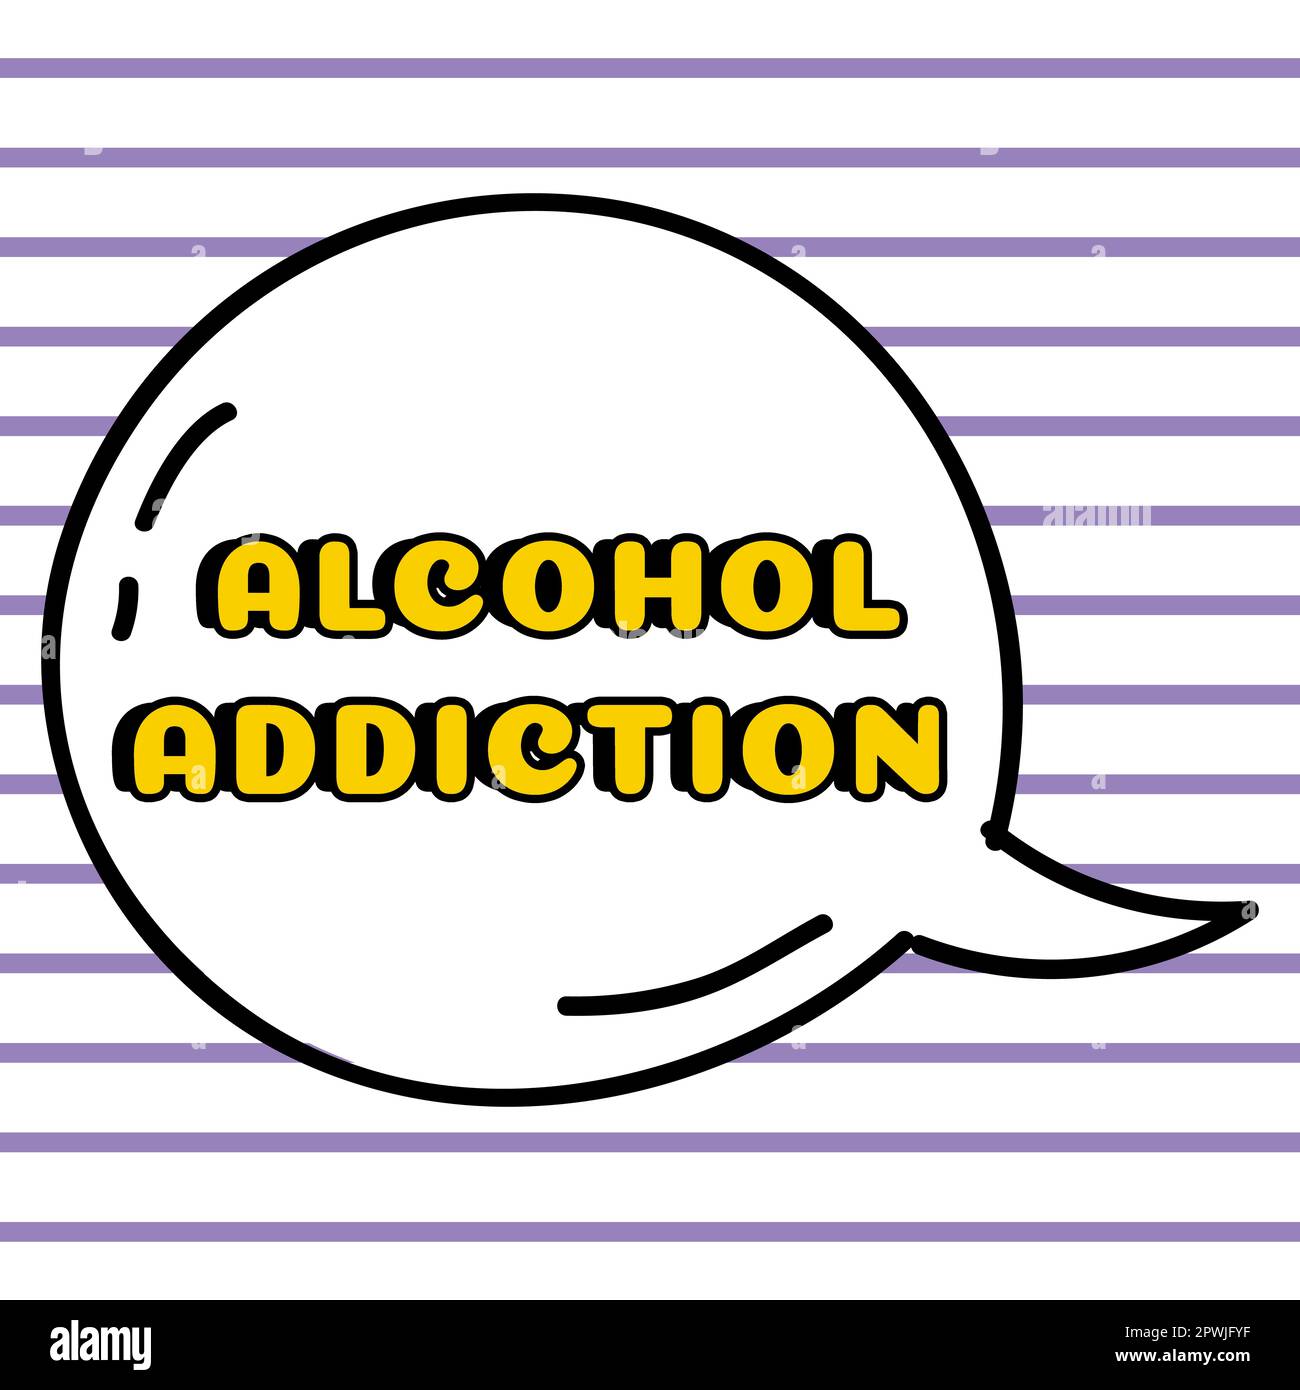 Testo scritto a mano Alcohol Addiction, vetrina aziendale caratterizzata da un consumo frequente ed eccessivo di bevande alcoliche Foto Stock